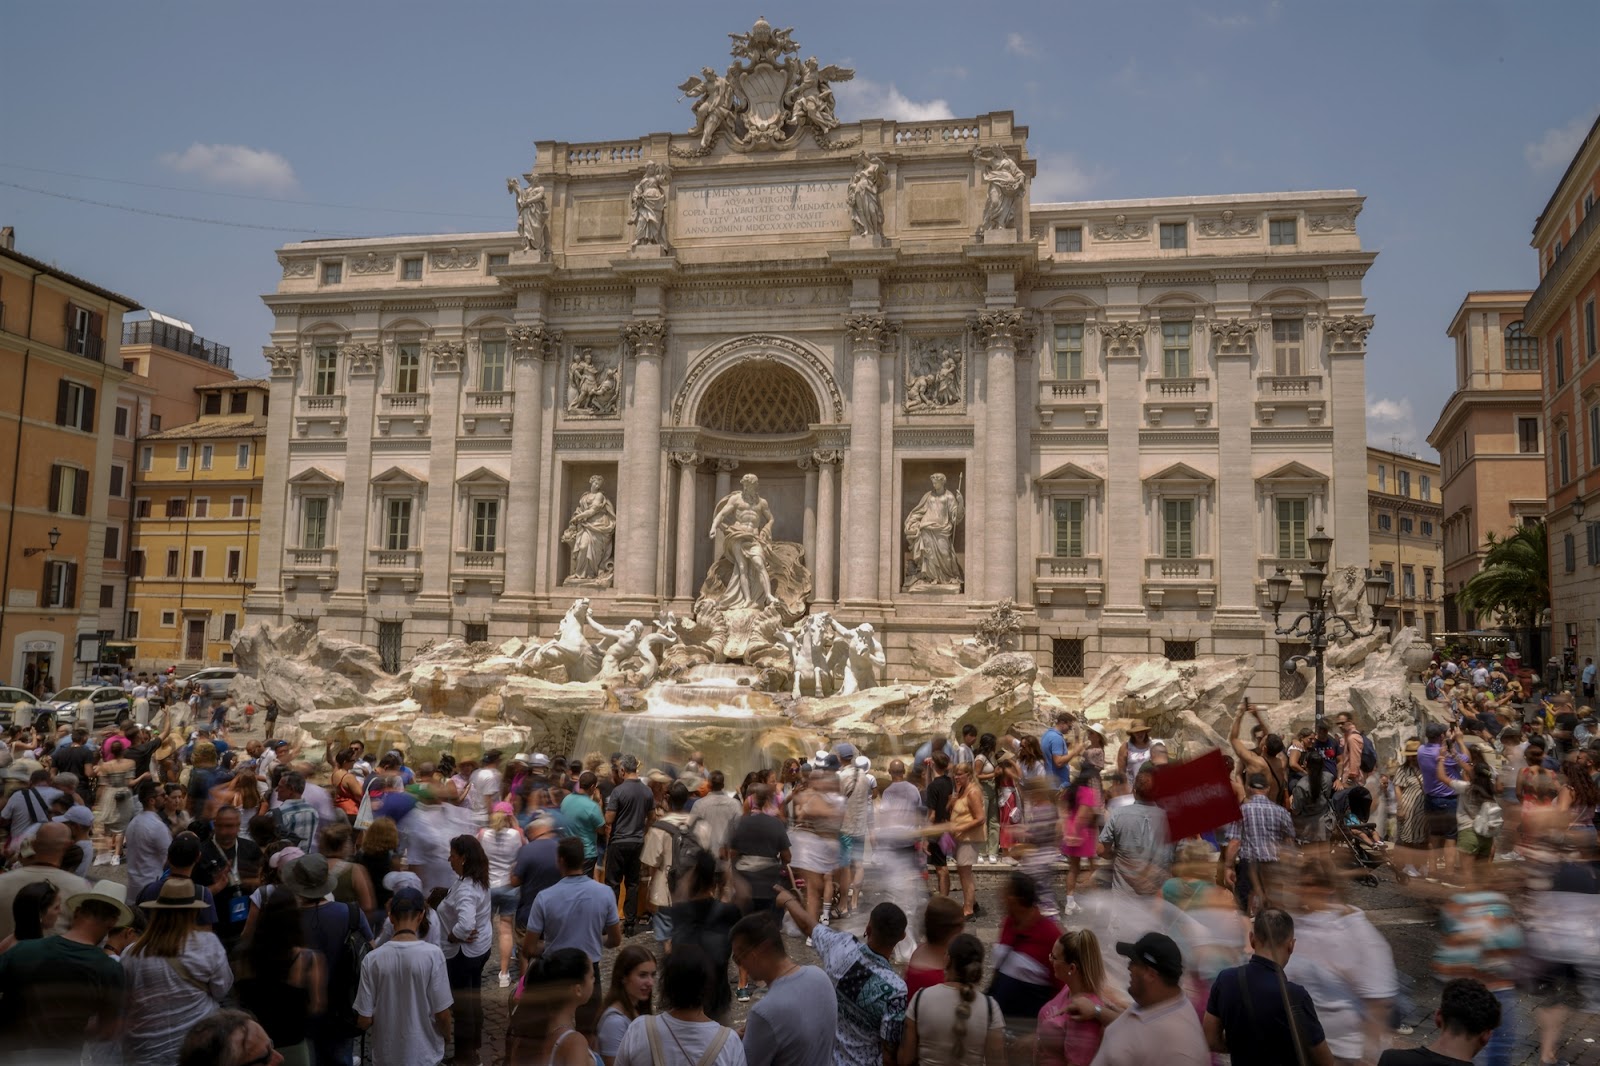 Η διάσημη και πάντα πλημμυρισμένη από κόσμο Φοντάνα ντι Τρέβι. Η Ιταλία ήταν ο δημοφιλέστερος προορισμός πολιτιστικού τουρισμού το 2019, σύμφωνα με μελέτη του ΙΝΣΕΤΕ.